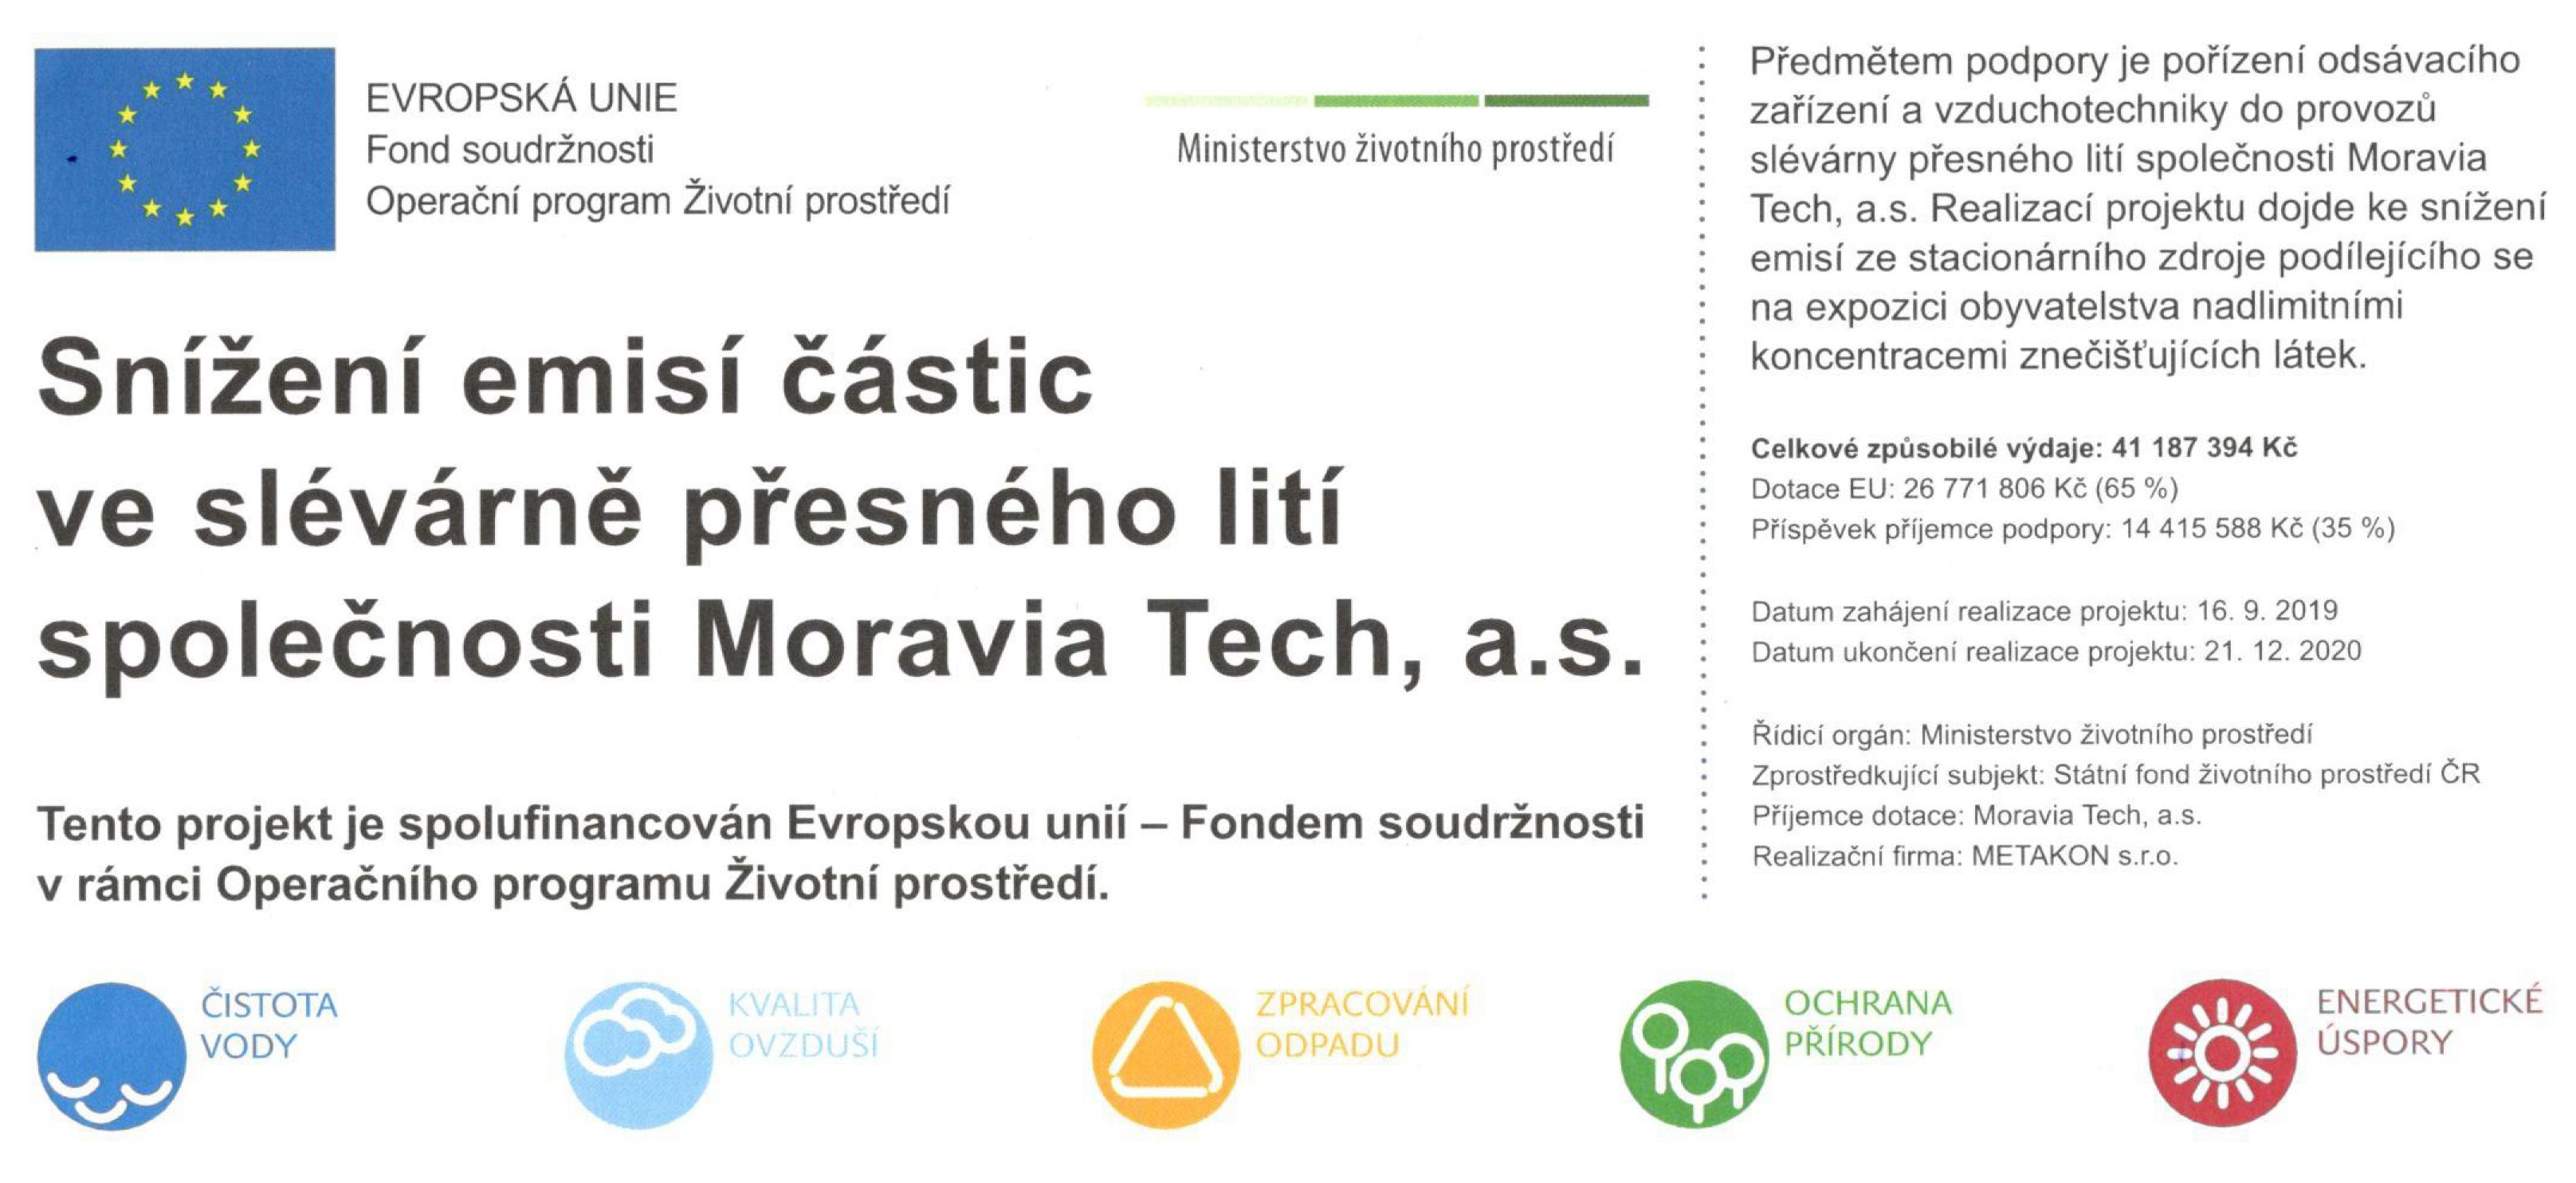 Snížení emisí částic ve slévárně přesného lití společnosti Moravia Tech, a.s.